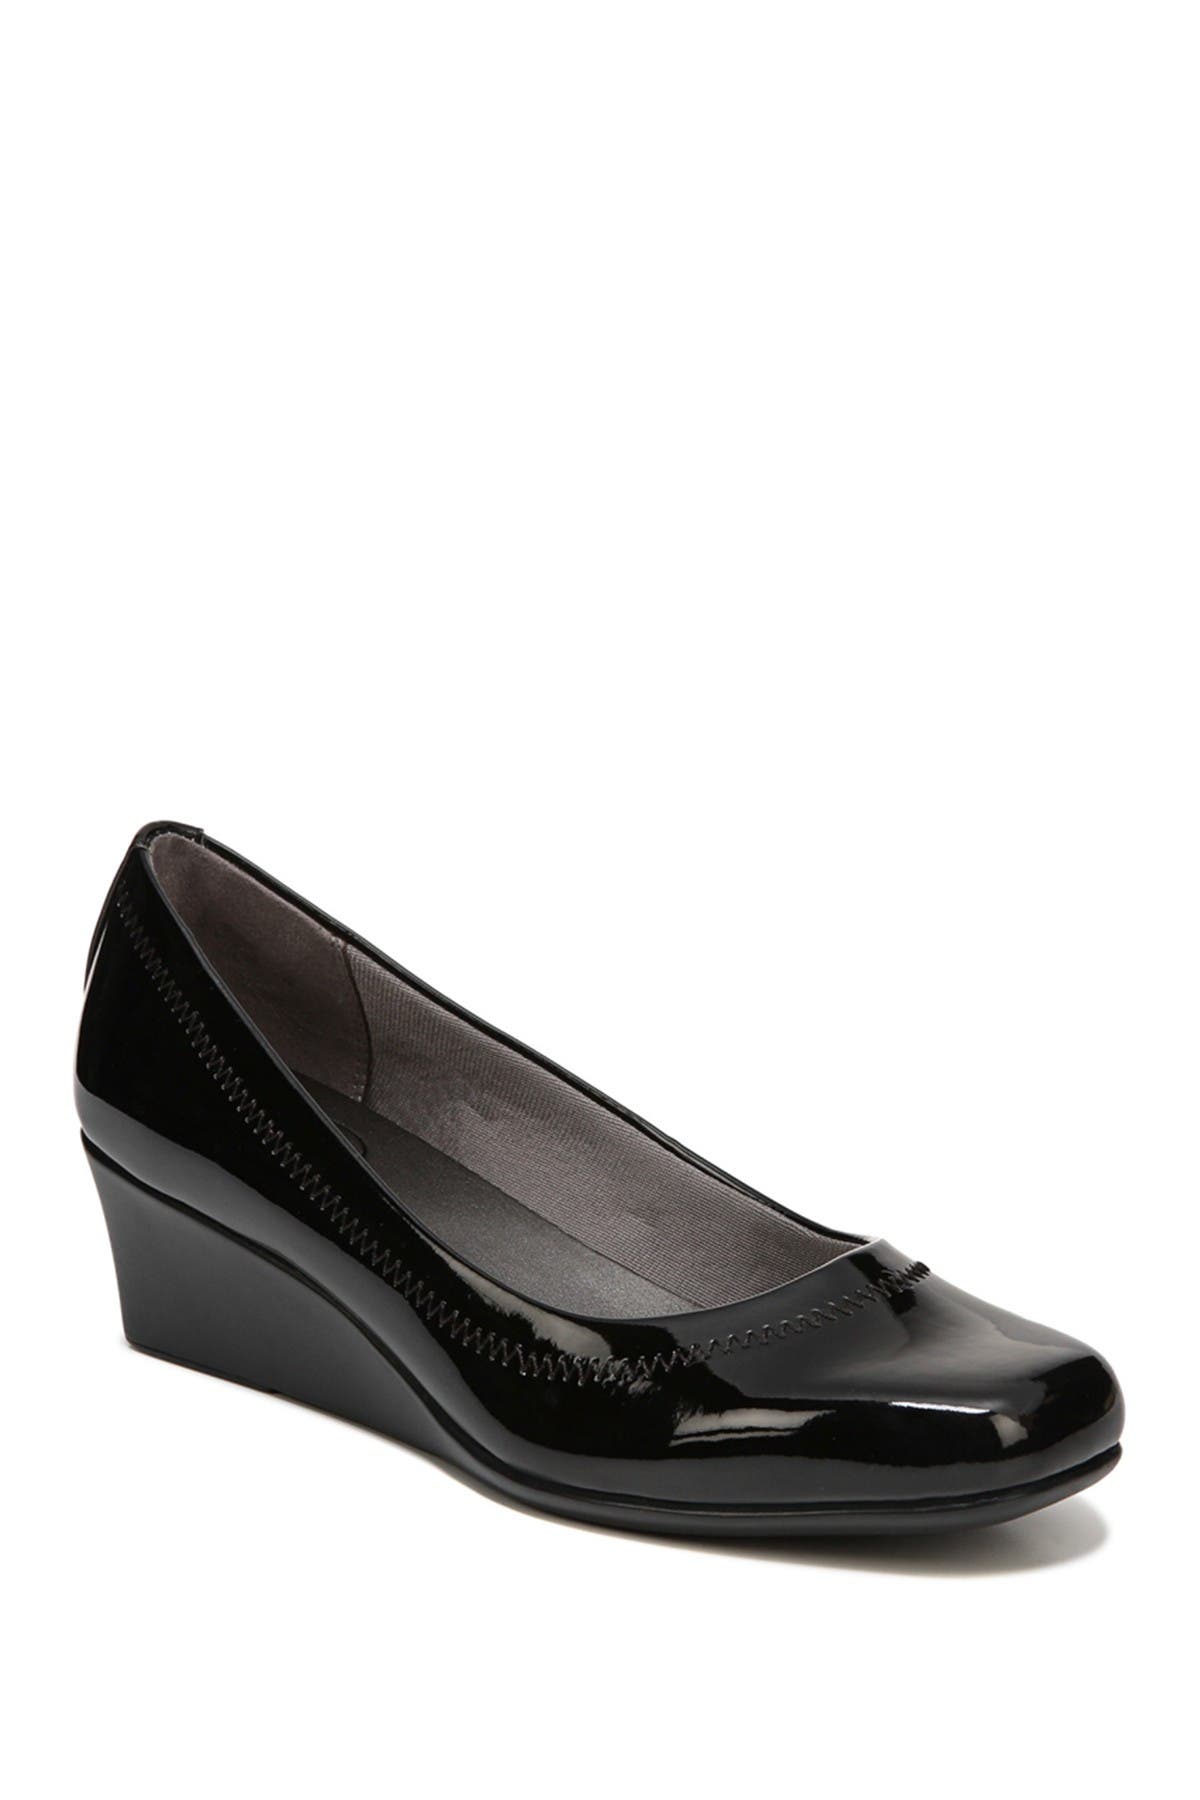 black wedge heels wide width